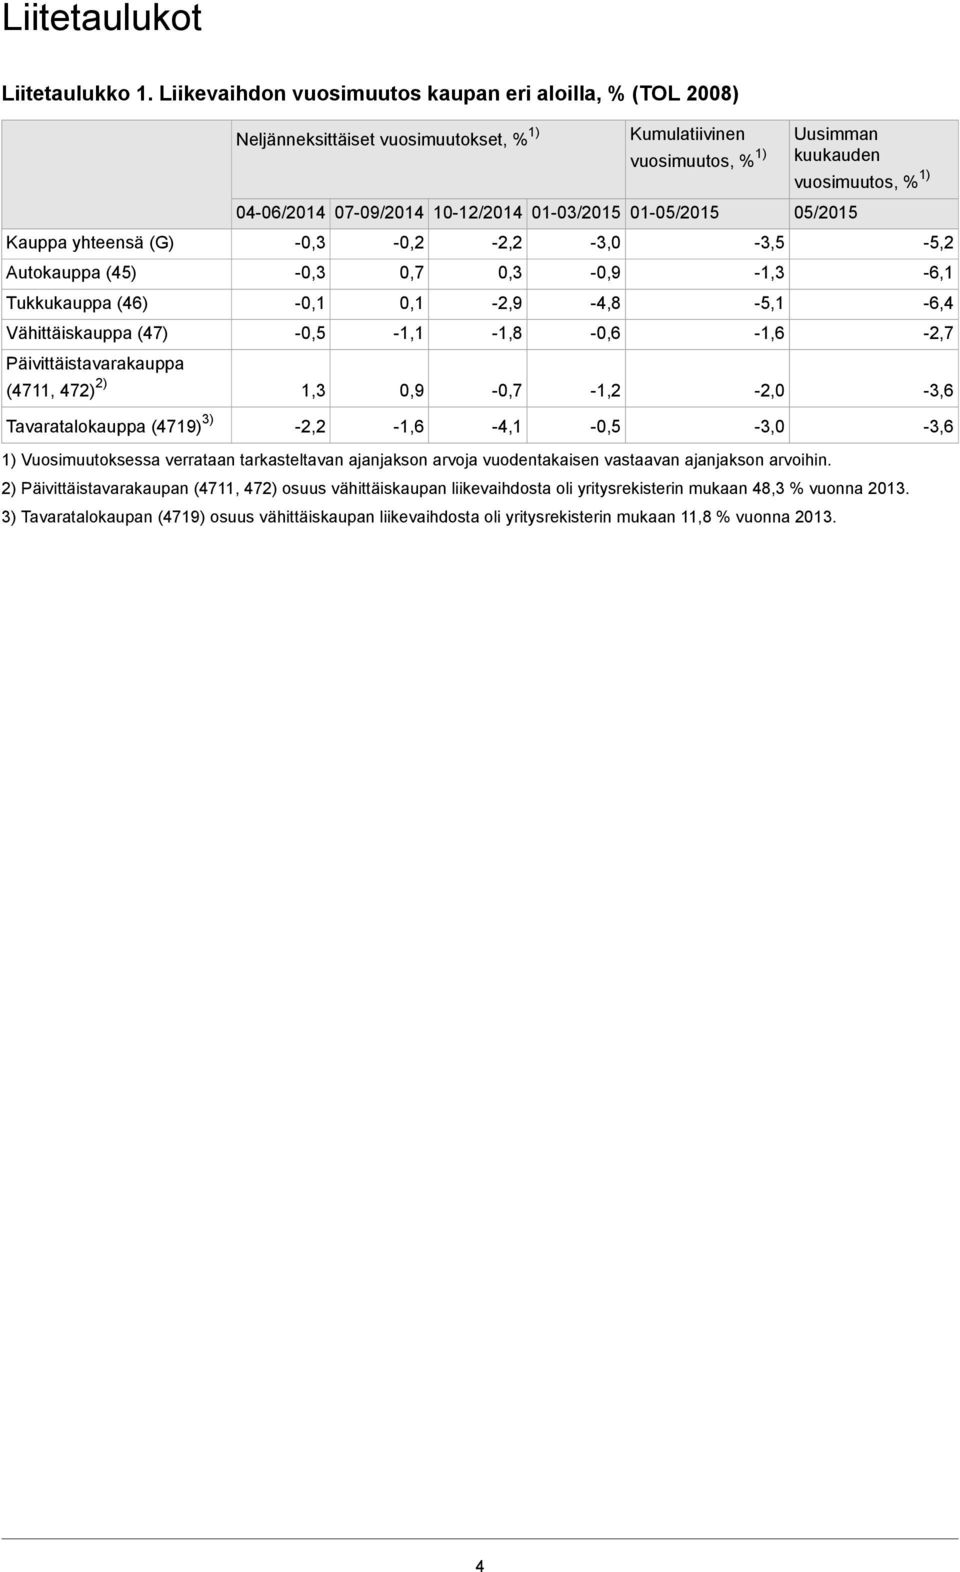 Neljänneksittäiset vuosimuutokset, % 1) Kumulatiivinen vuosimuutos, % 1) 04-06/2014 07-09/2014 10-01- 01-05/2015-0,3-0,3 1,3-2,2-0,2 0,7-1,1 0,9-1,6 1) Vuosimuutoksessa verrataan tarkasteltavan